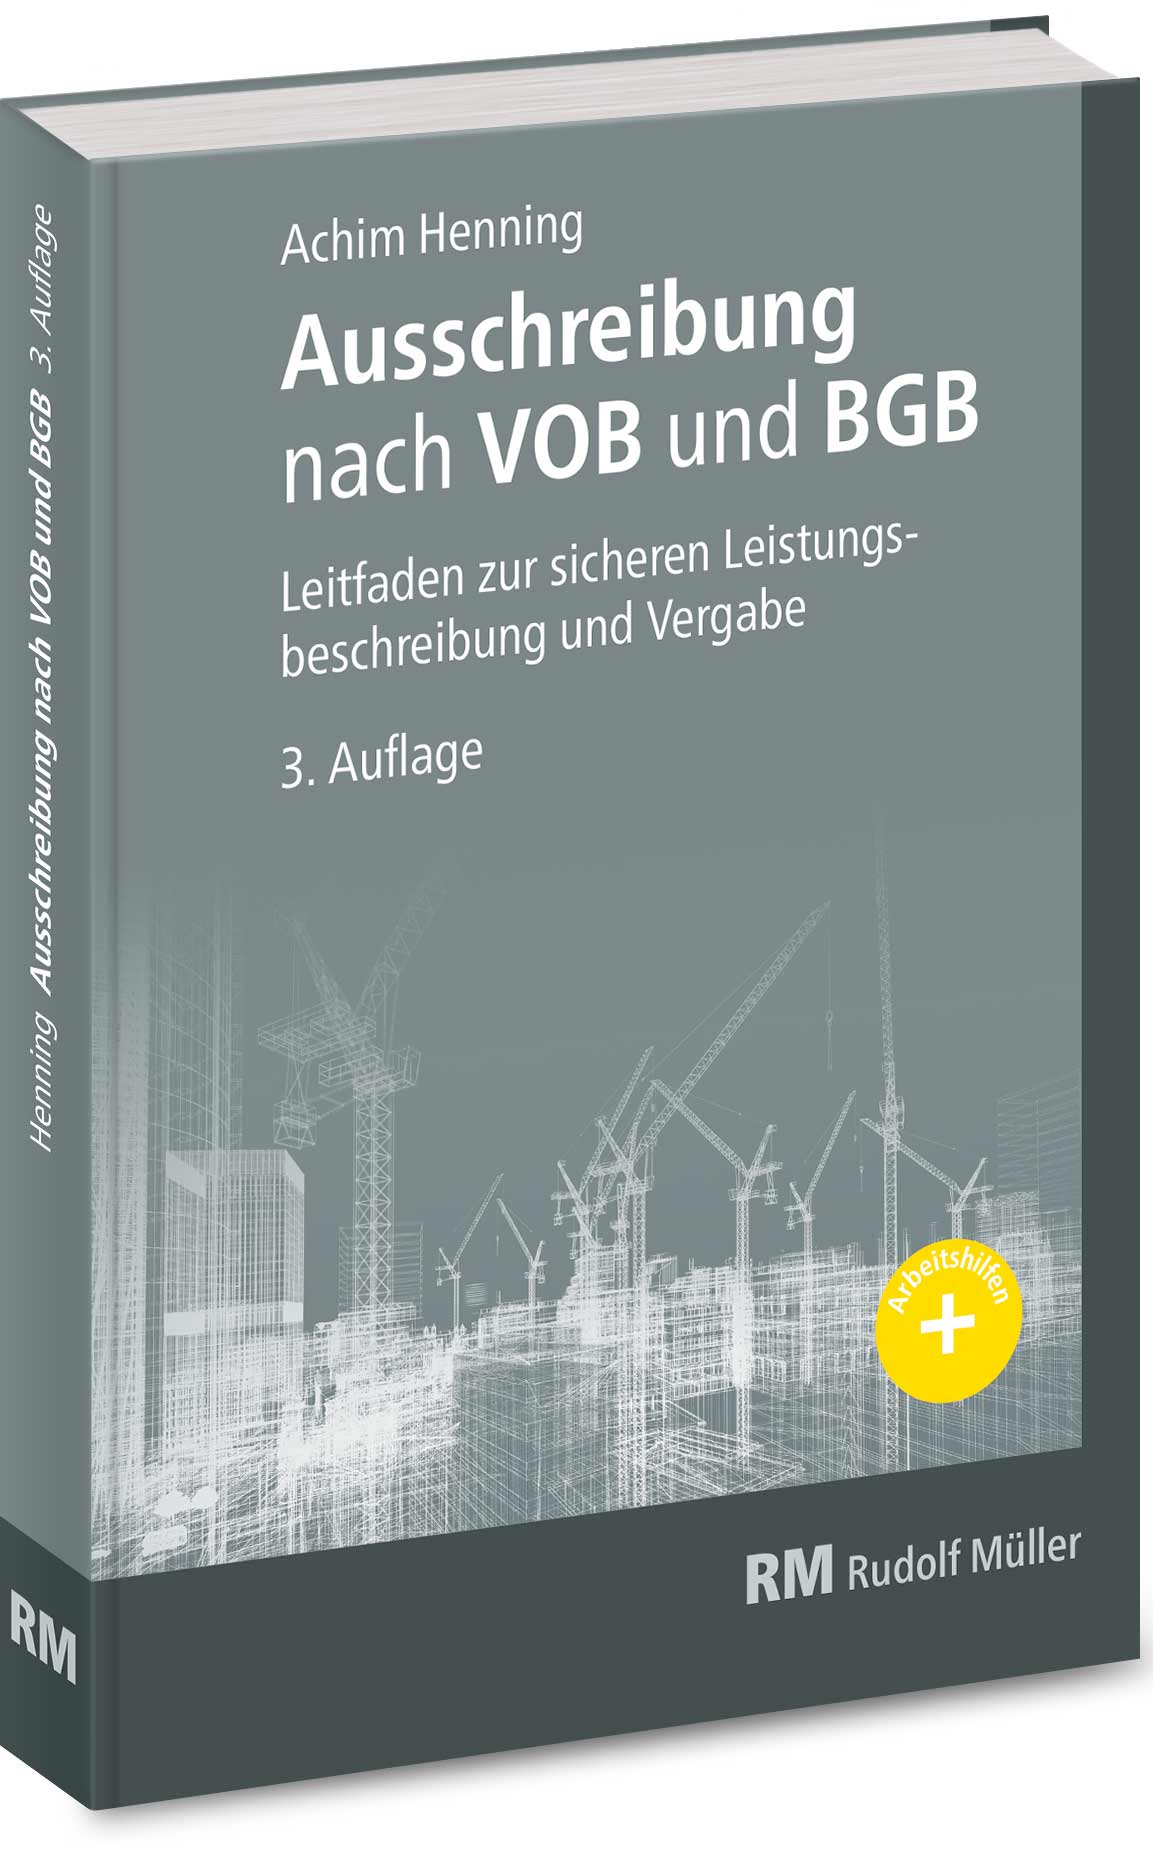 Leitfaden „Ausschreibung nach VOB und BGB“ in 3. Auflage erschienen